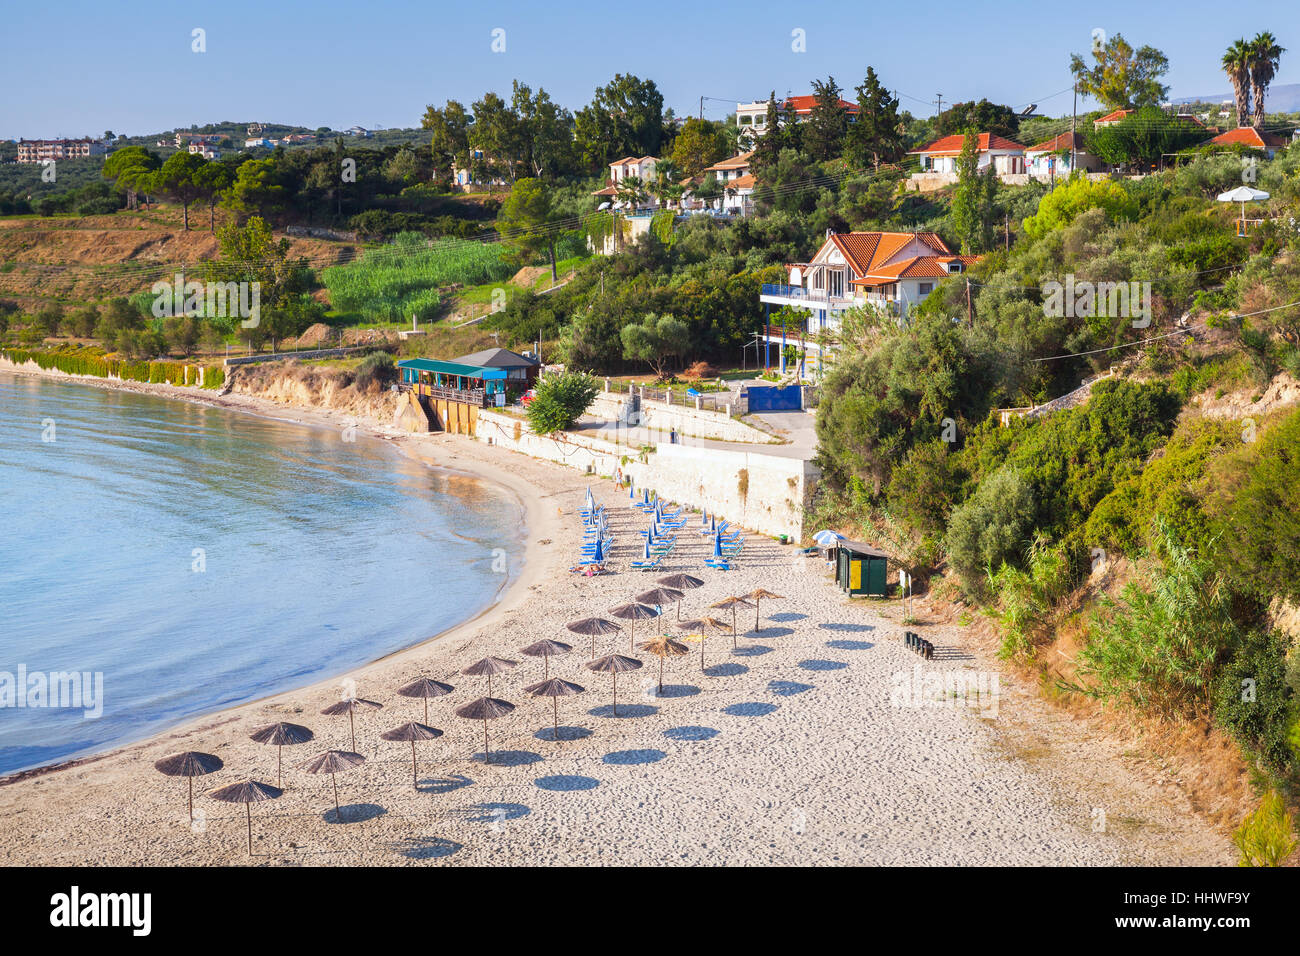 Bouka Beach in mattinata estiva, popolare località turistica della destinazione di Zante, isola greca nel Mar Ionio Foto Stock